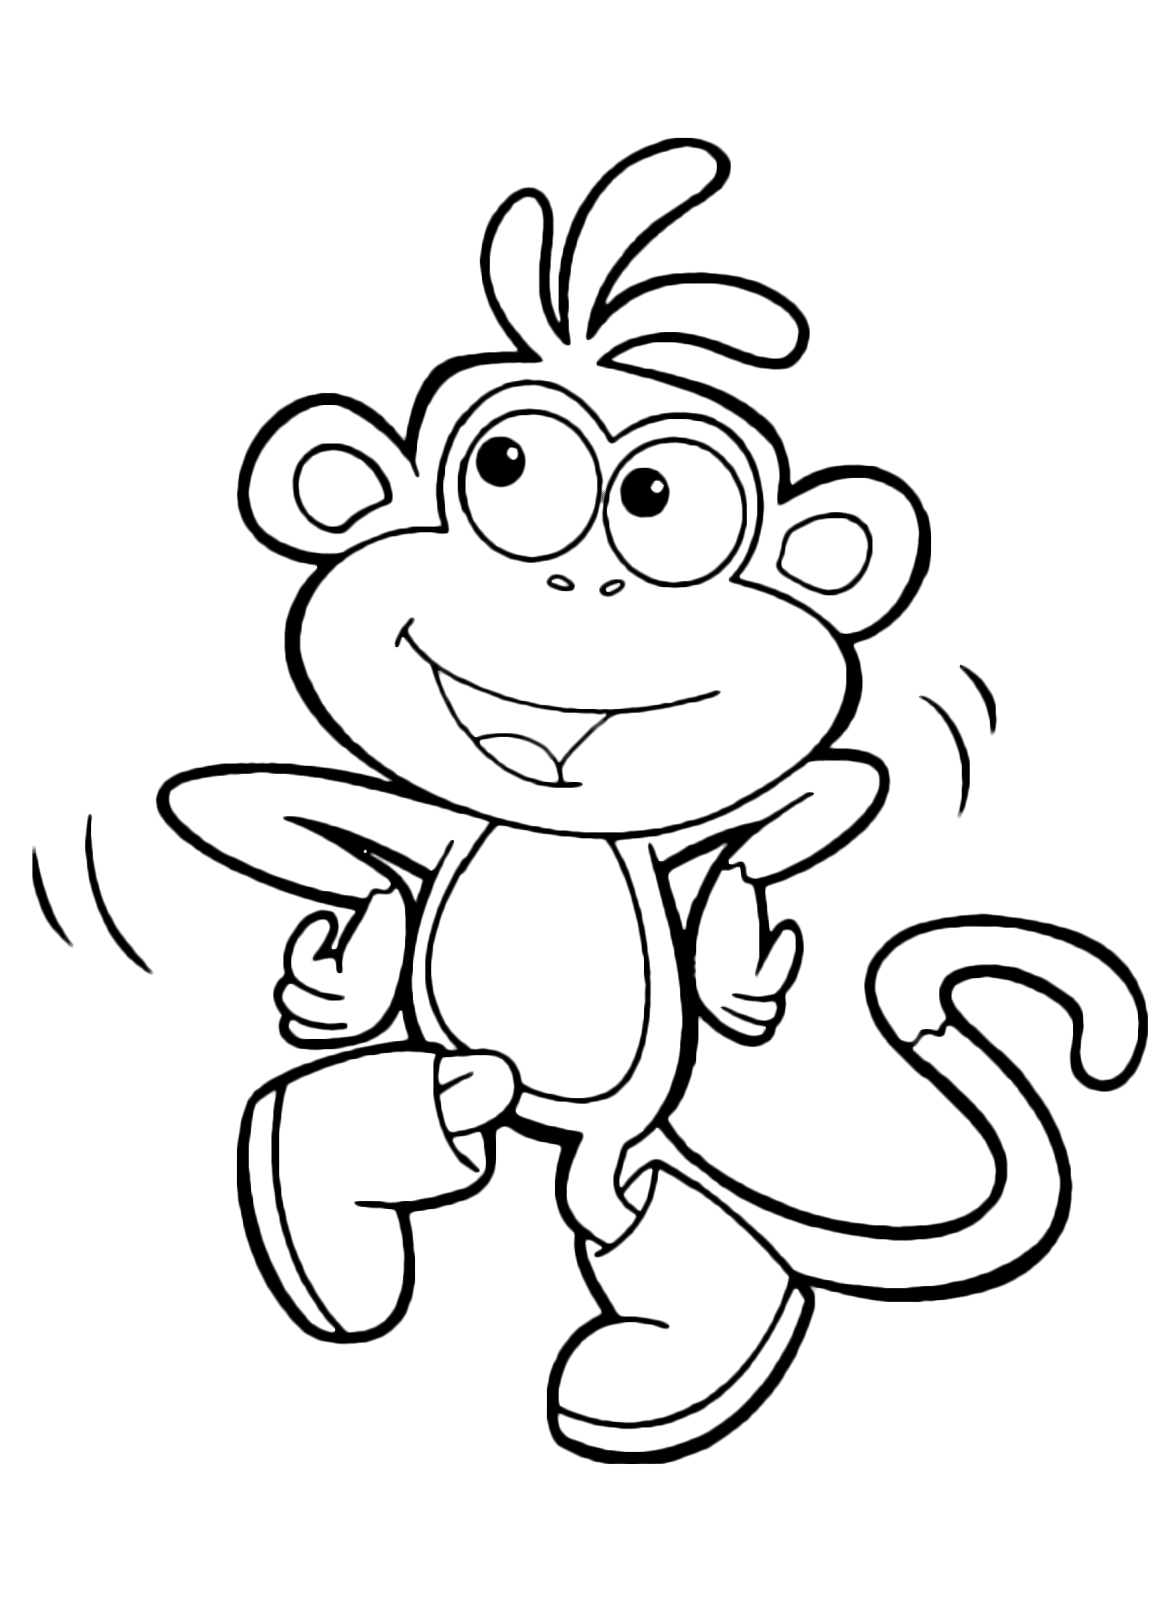 Dora l'esploratrice - Boots la scimmietta balla felice